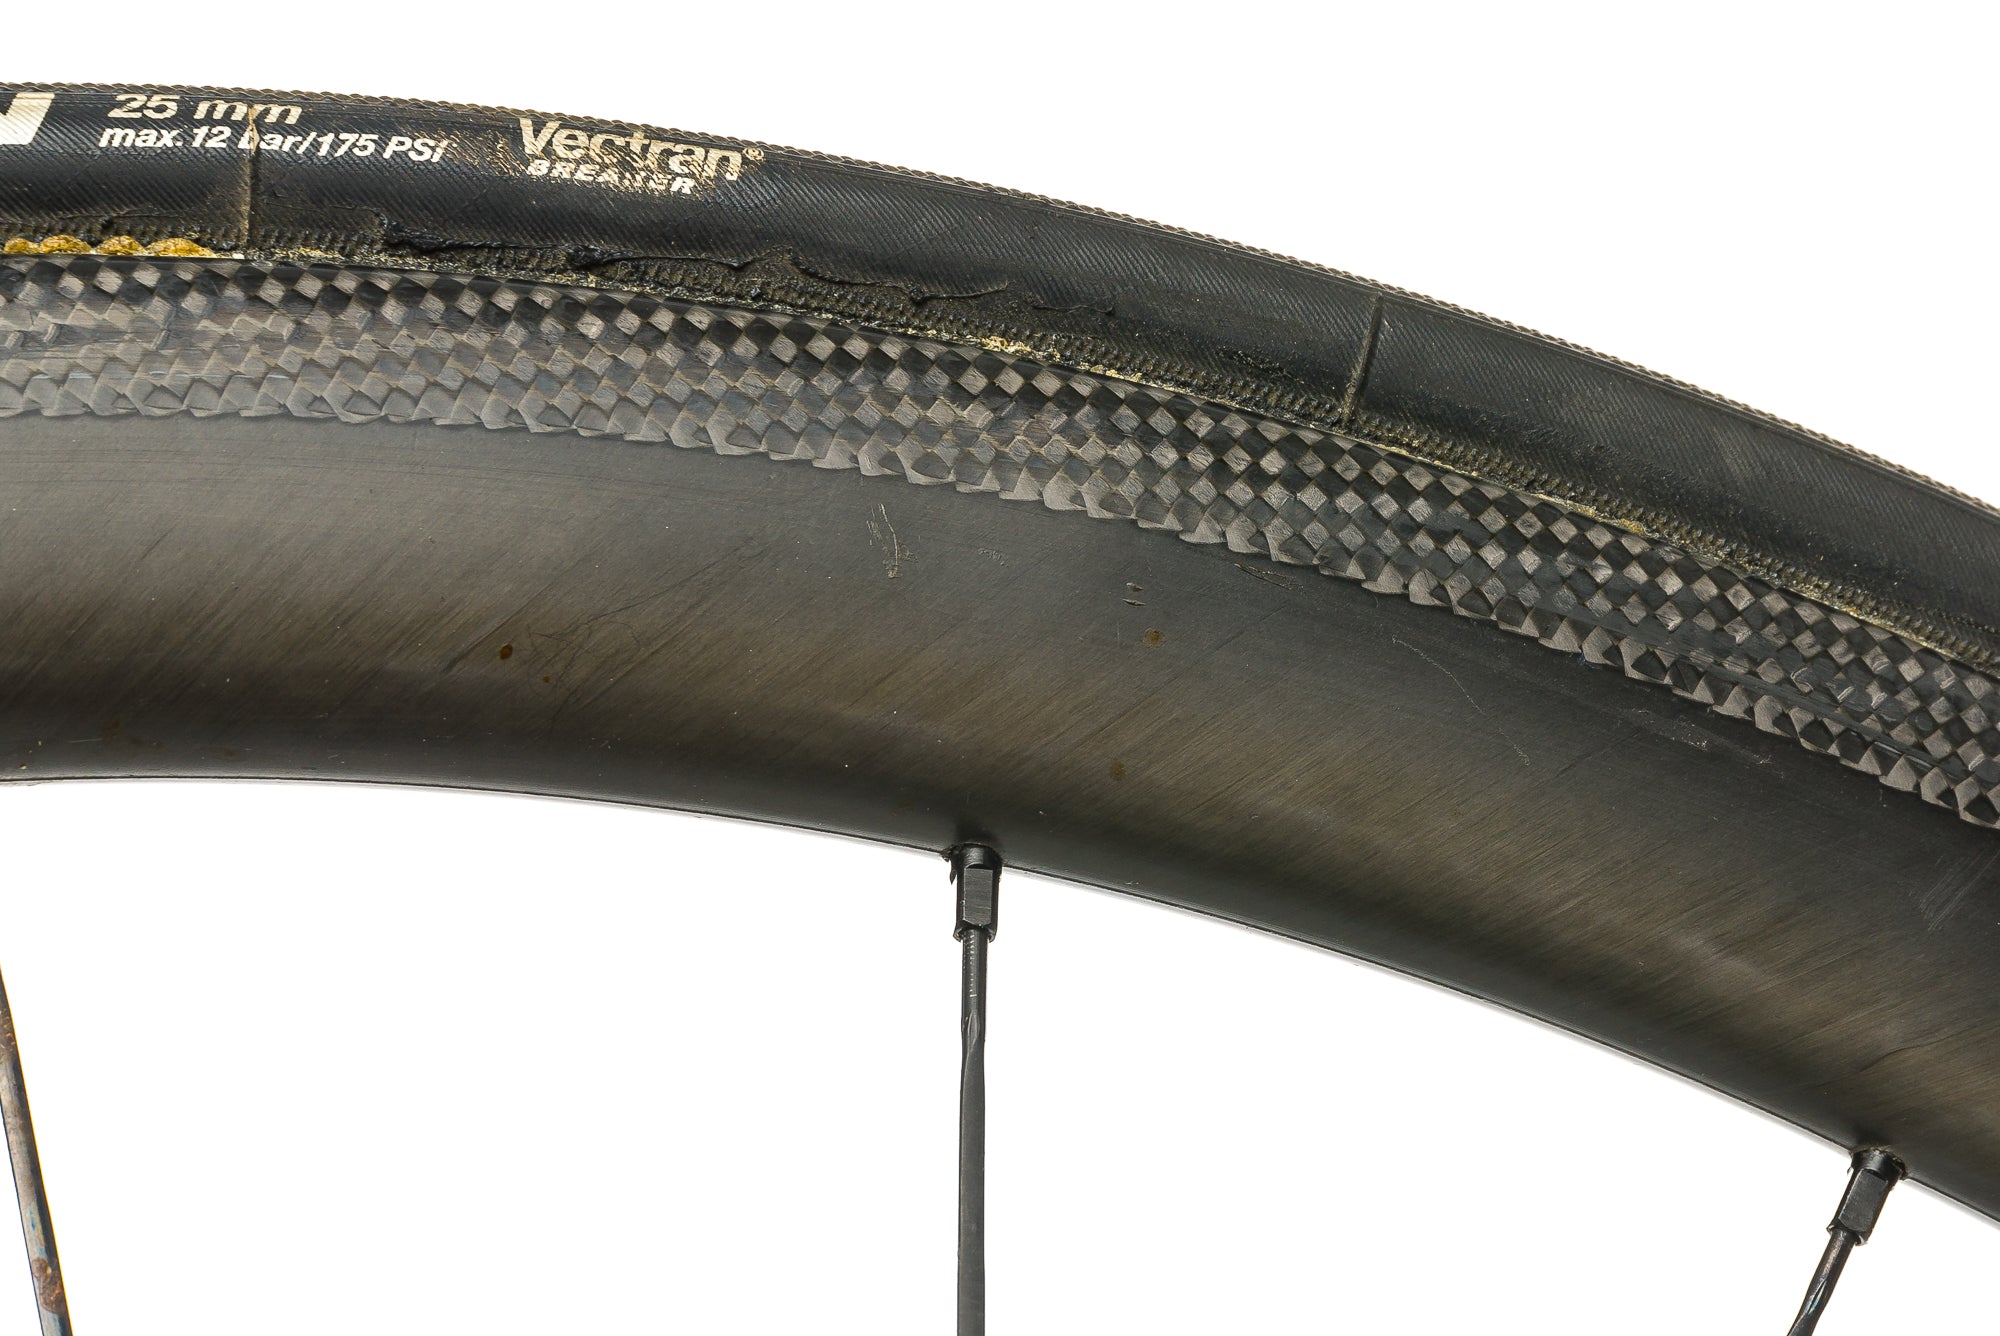 HED Stinger 3 Carbon Tubular 700c Wheelset detail 1